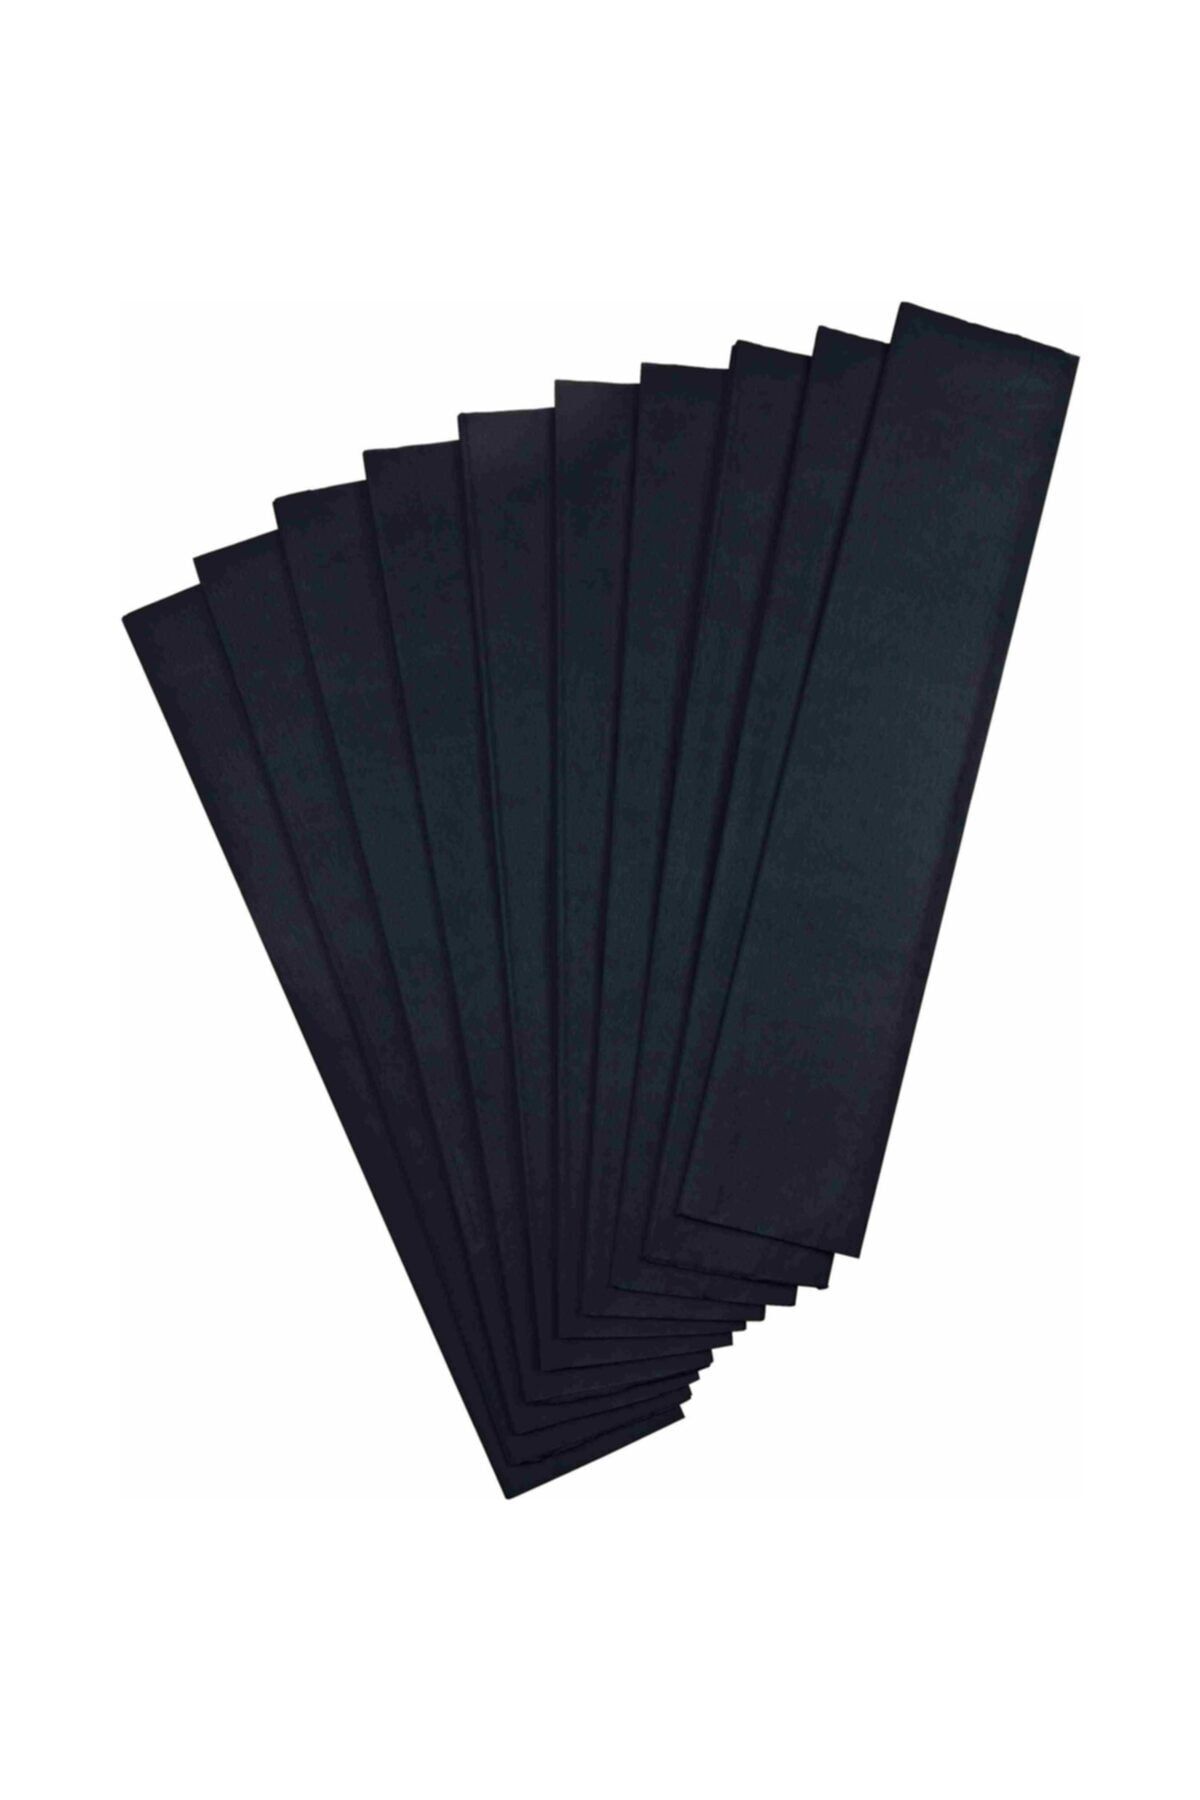 Genel Markalar Color Nc-653 Siyah Krapon Kağıdı 10'lu